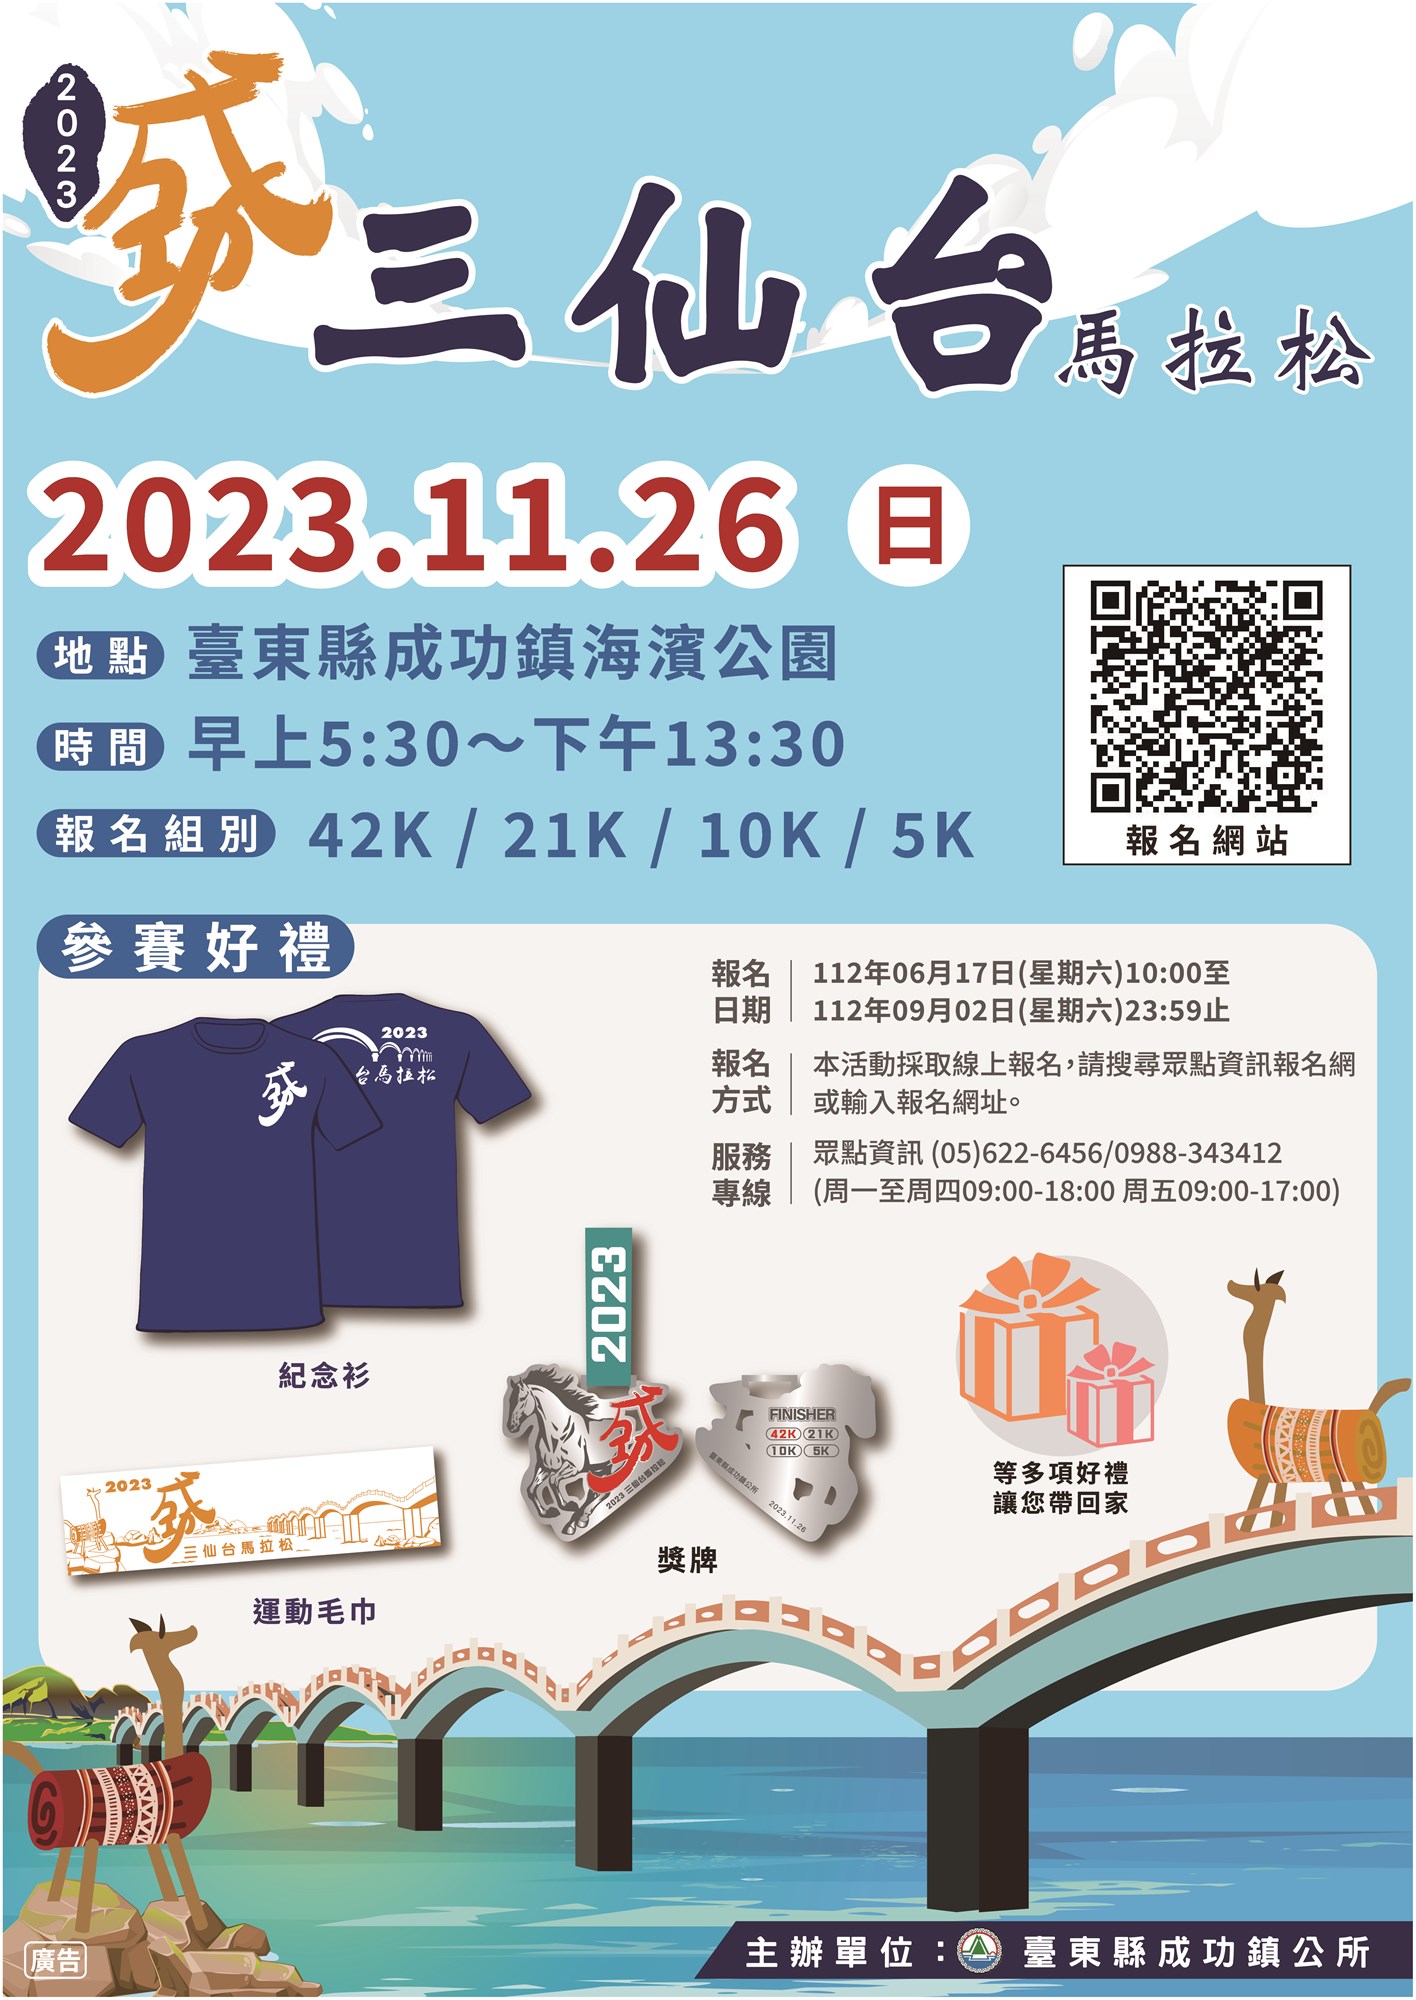 กิจกรรมที่ประสบความสำเร็จของ Sanxiantai Marathon ปี 2023 ของ Taitung